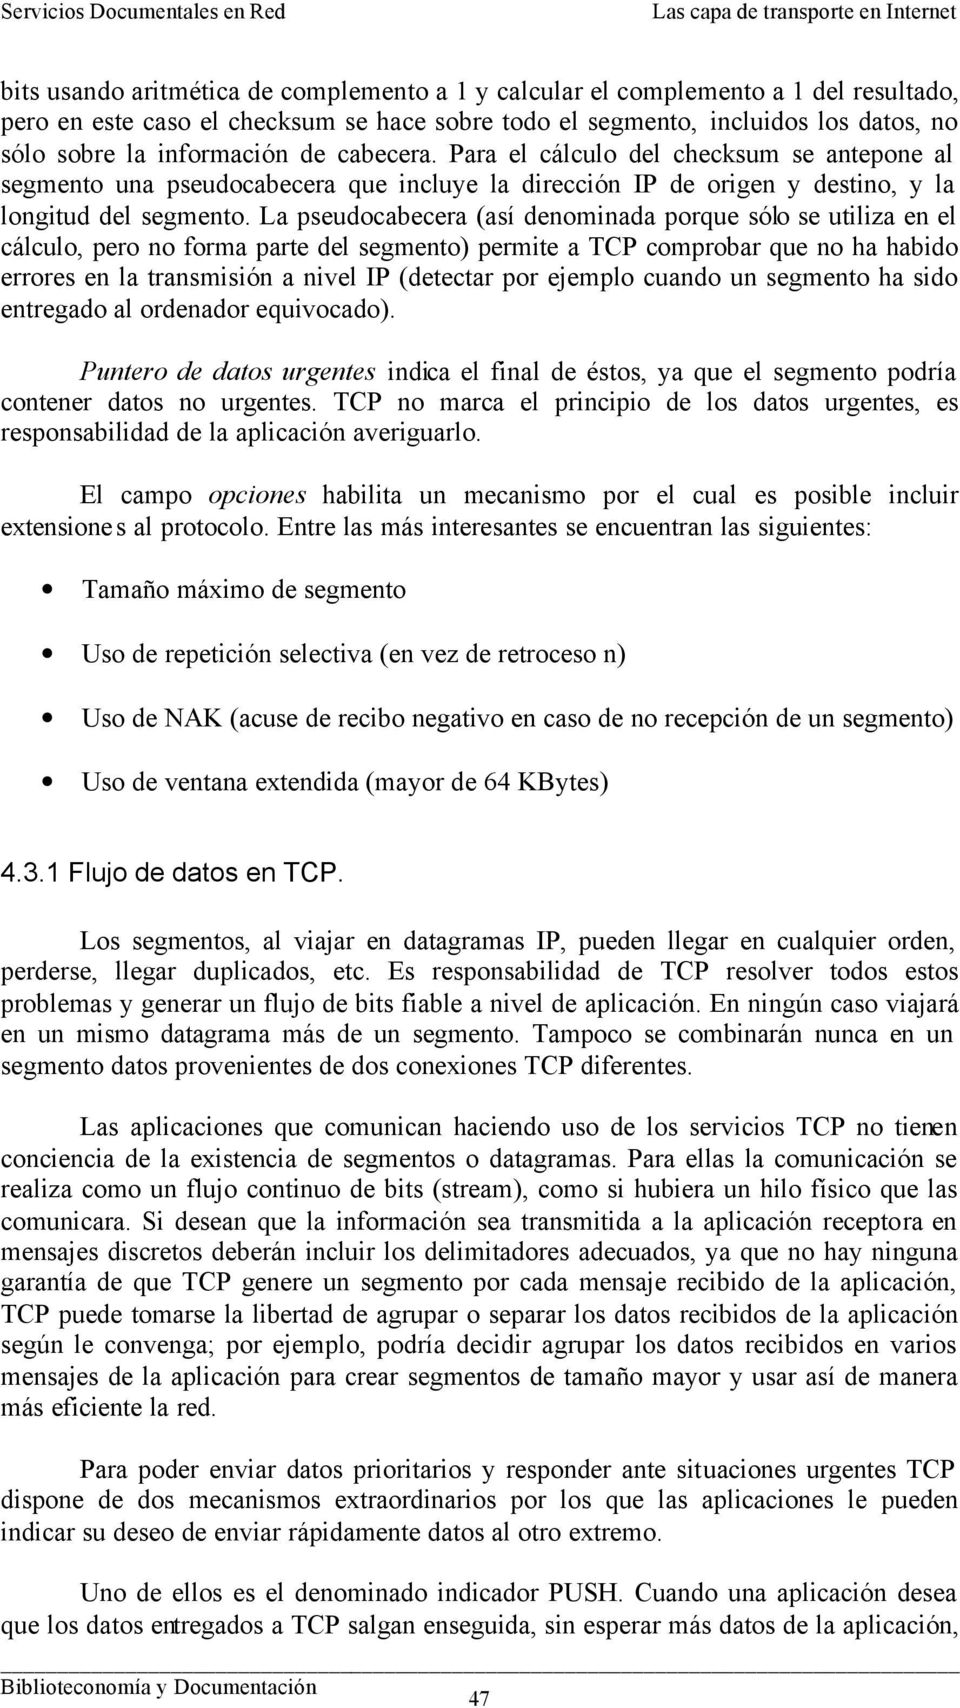 La pseudocabecera (así denominada porque sólo se utiliza en el cálculo, pero no forma parte del segmento) permite a TCP comprobar que no ha habido errores en la transmisión a nivel IP (detectar por